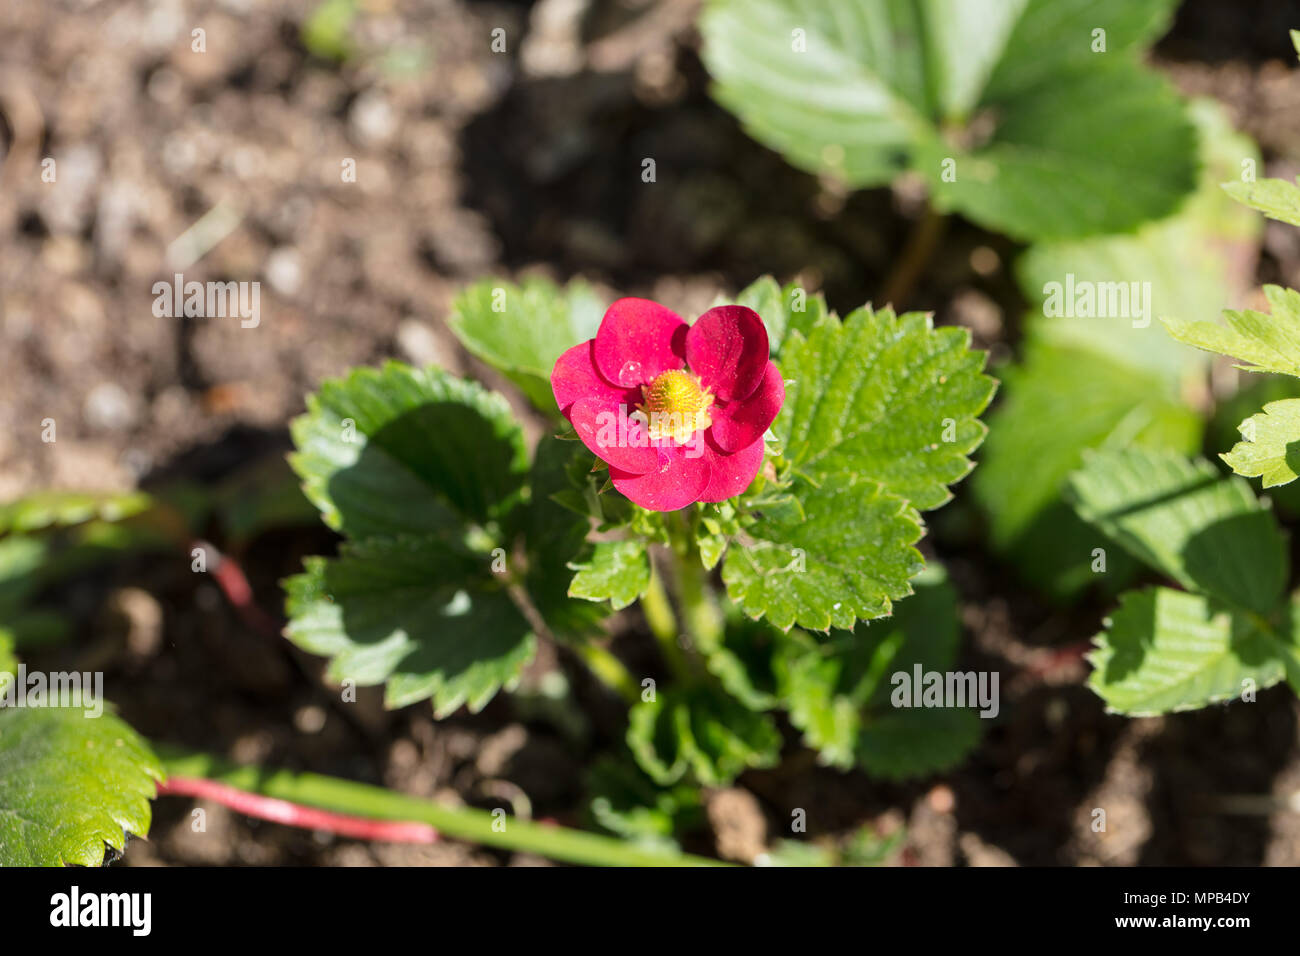 'Ruby Ann' White strawberry, Jordgubbe (Fragaria ananassa) Stock Photo